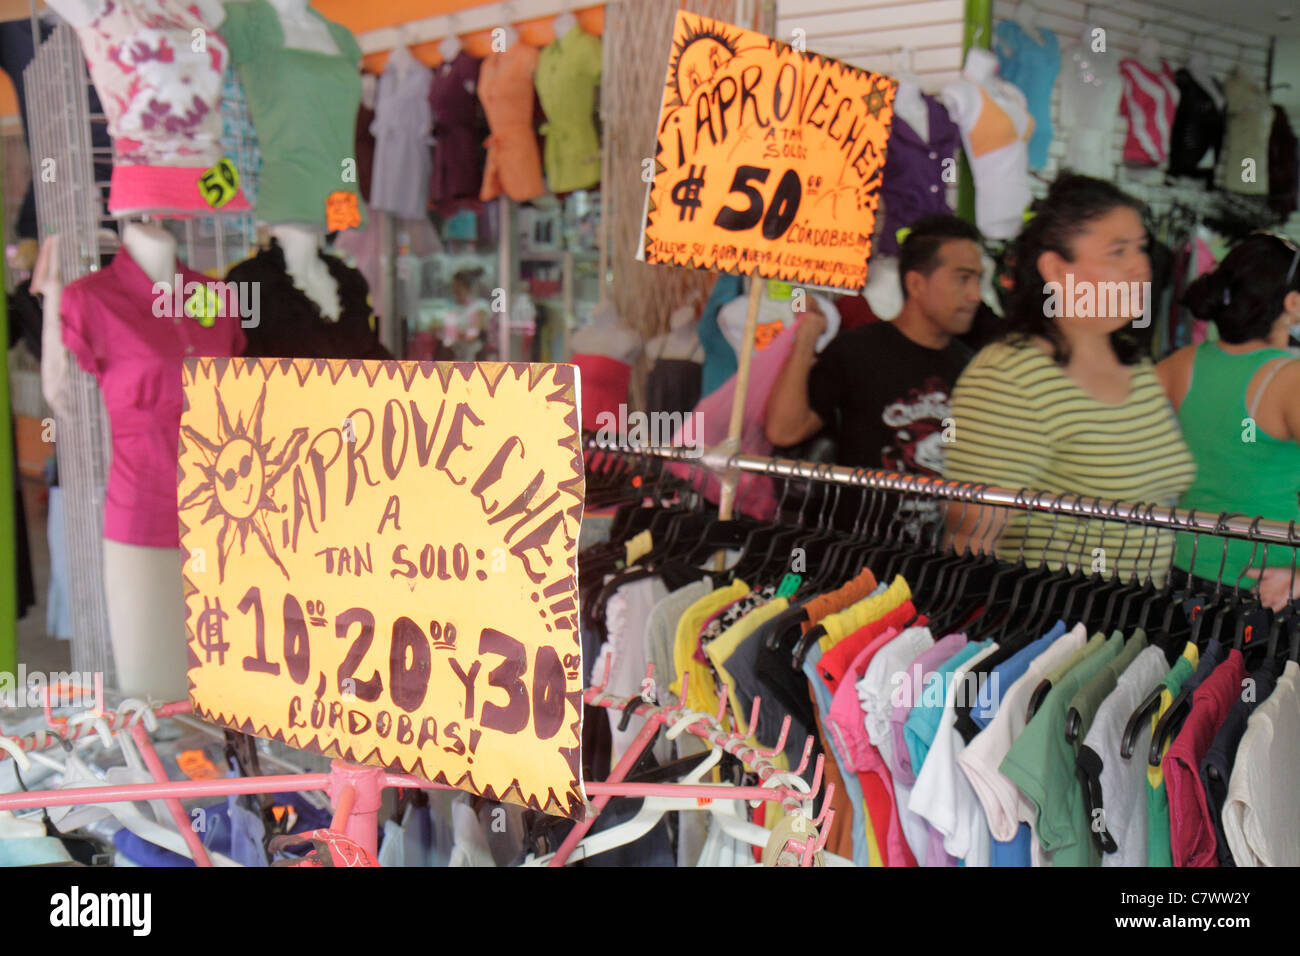 Managua Nicaragua,Central America,Mercado Roberto Huembes,market,shopping shopper shoppers shop shops market markets marketplace buying selling,retail Stock Photo